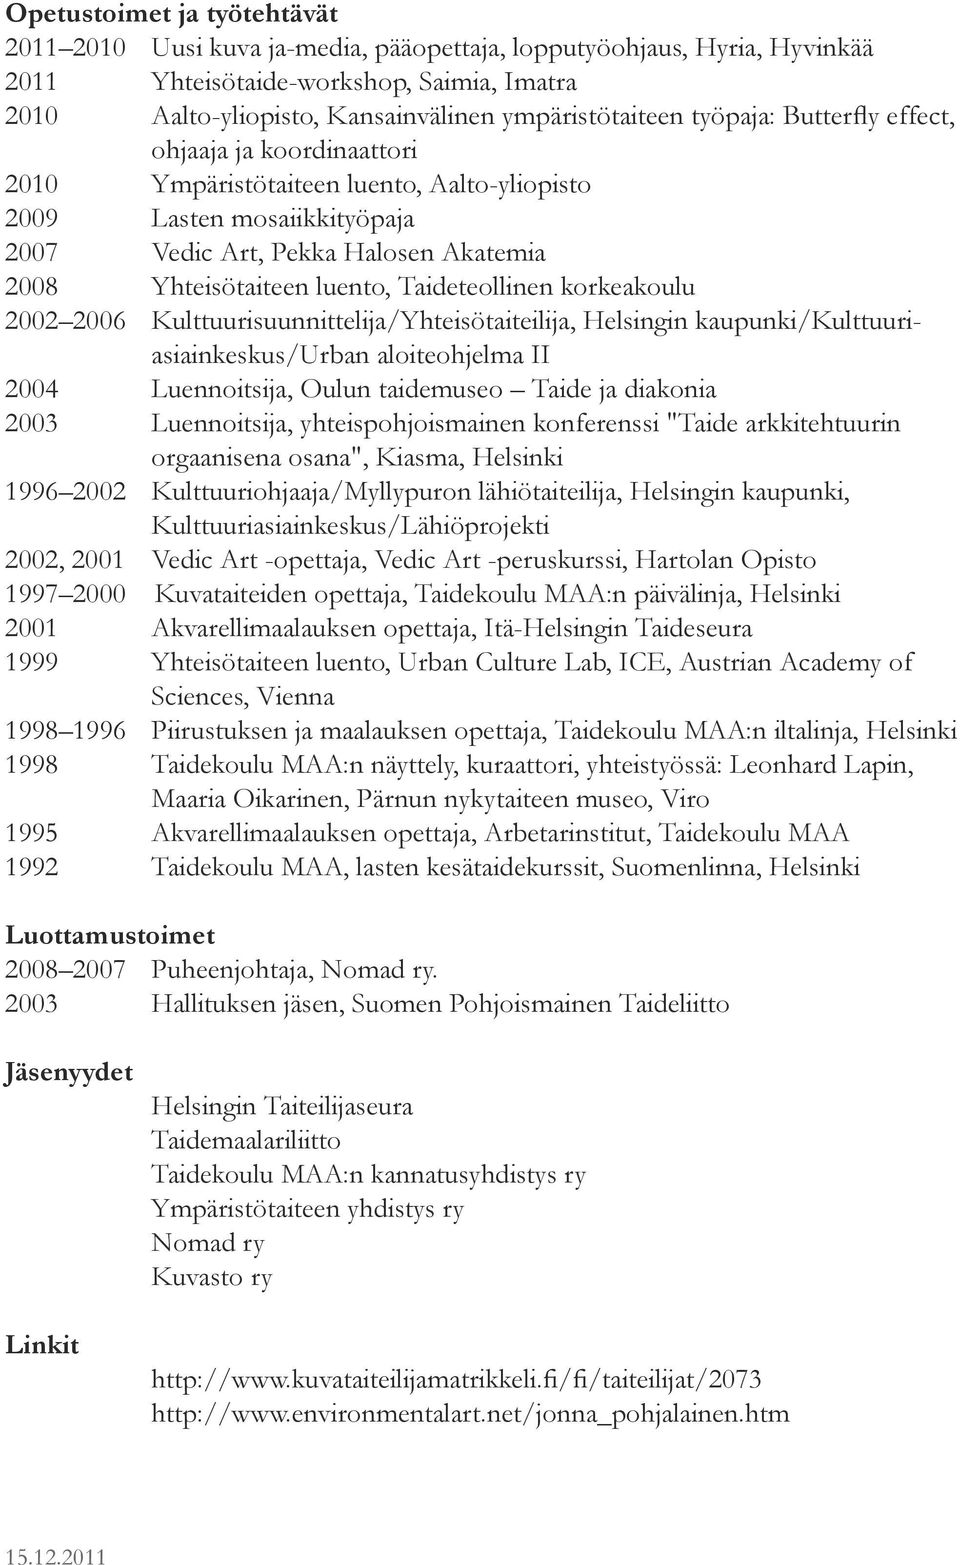 diakonia 2003 Luennoitsija, yhteispohjoismainen konferenssi "Taide arkkitehtuurin orgaanisena osana", Kiasma, Helsinki 1996 2002, 2001 Vedic Art -opettaja, Vedic Art -peruskurssi, Hartolan Opisto